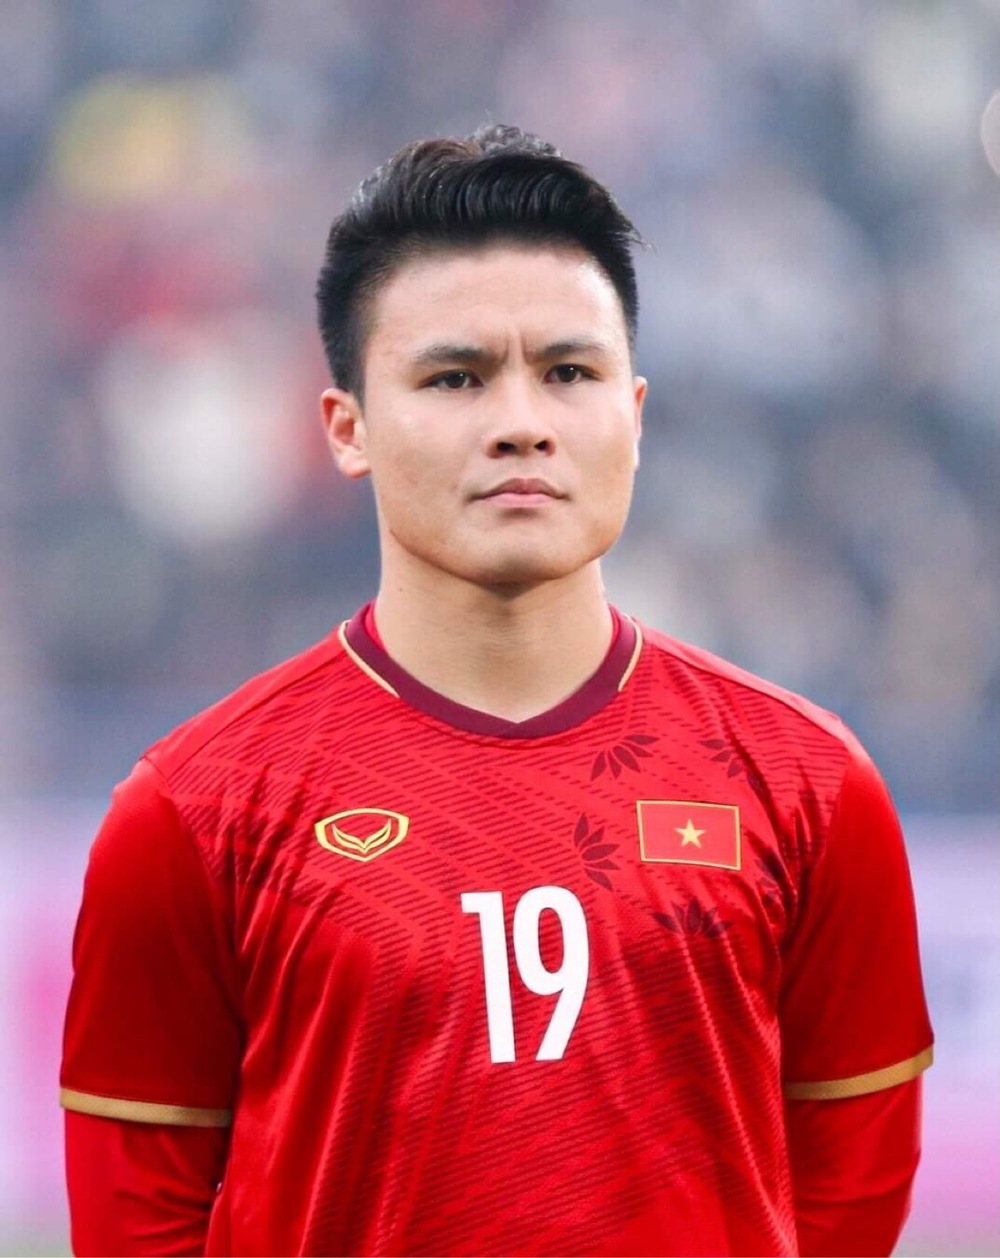 Với sự khiêm tốn và tài chính đầy sáng suốt của Nguyễn Quang Hải, không khó để hiểu vì sao anh luôn là một trong những cầu thủ được yêu thích nhất của đội tuyển Việt Nam. Hãy cùng xem những hình ảnh dấu ấn của anh trong màu áo đoàn quân áo đỏ.